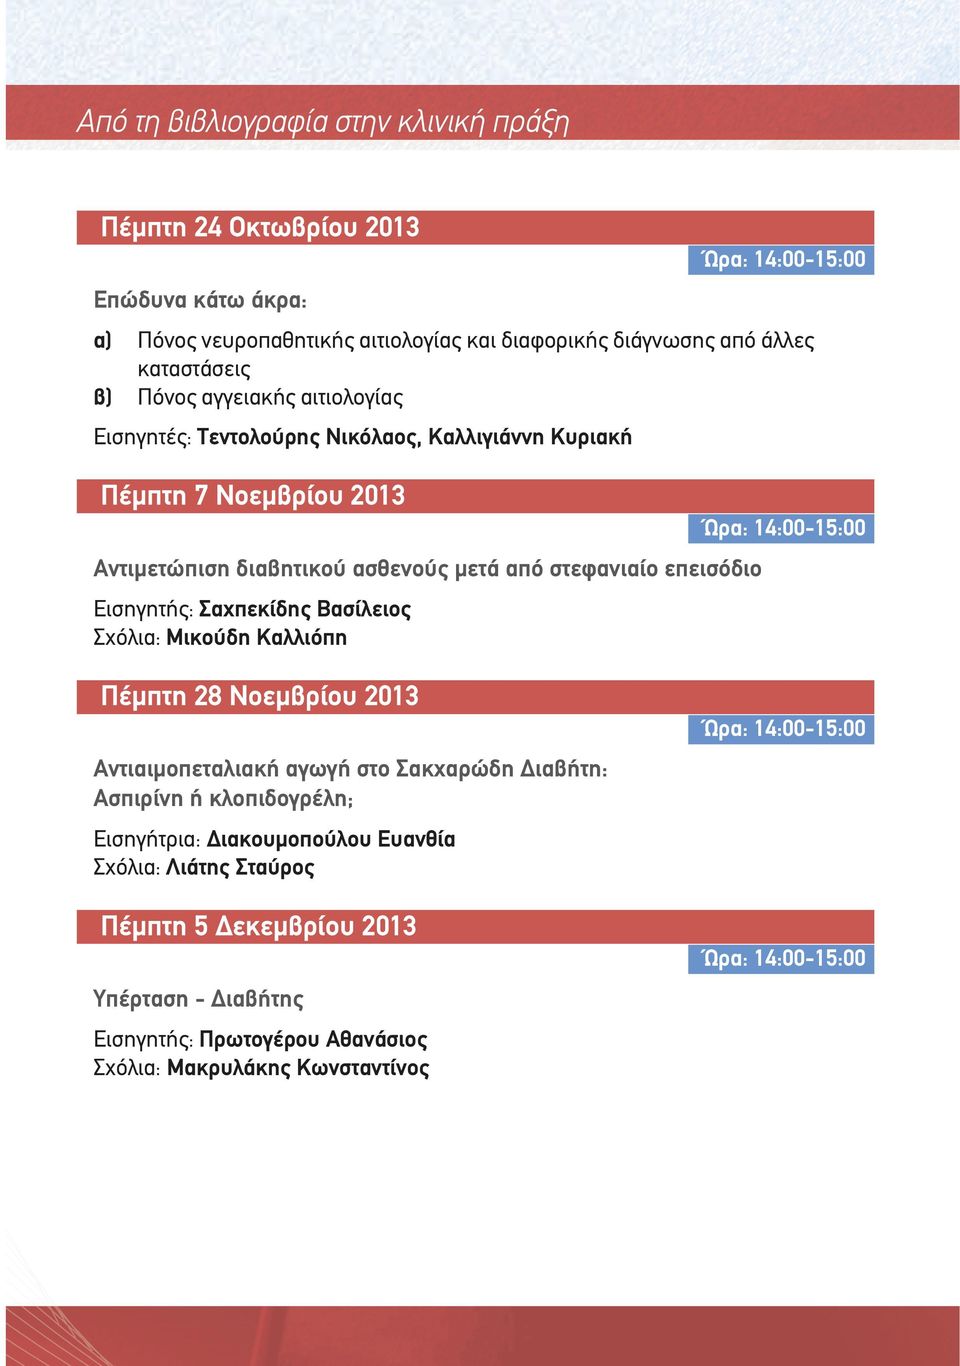 Εισηγητής: Σαχπεκίδης Βασίλειος Σχόλια: Μικούδη Καλλιόπη Πέµπτη 28 Νοεµβρίου 2013 Αντιαιµοπεταλιακή αγωγή στο Σακχαρώδη ιαβήτη: Ασπιρίνη ή κλοπιδογρέλη;